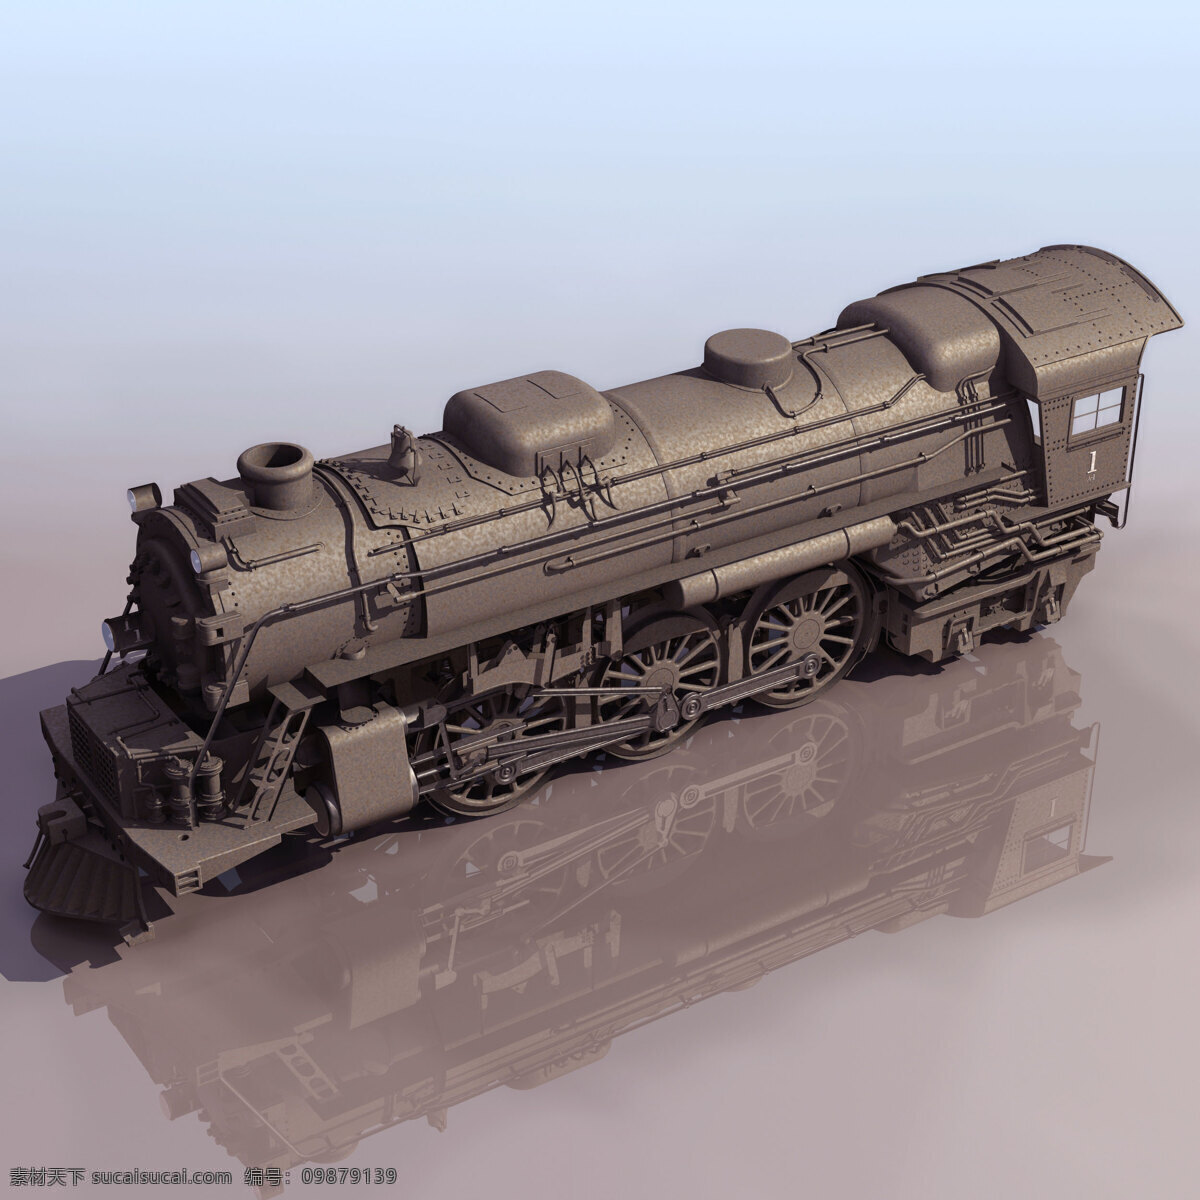 火车头 模型 3d模型 火车素材 火车头模型 3d模型素材 其他3d模型